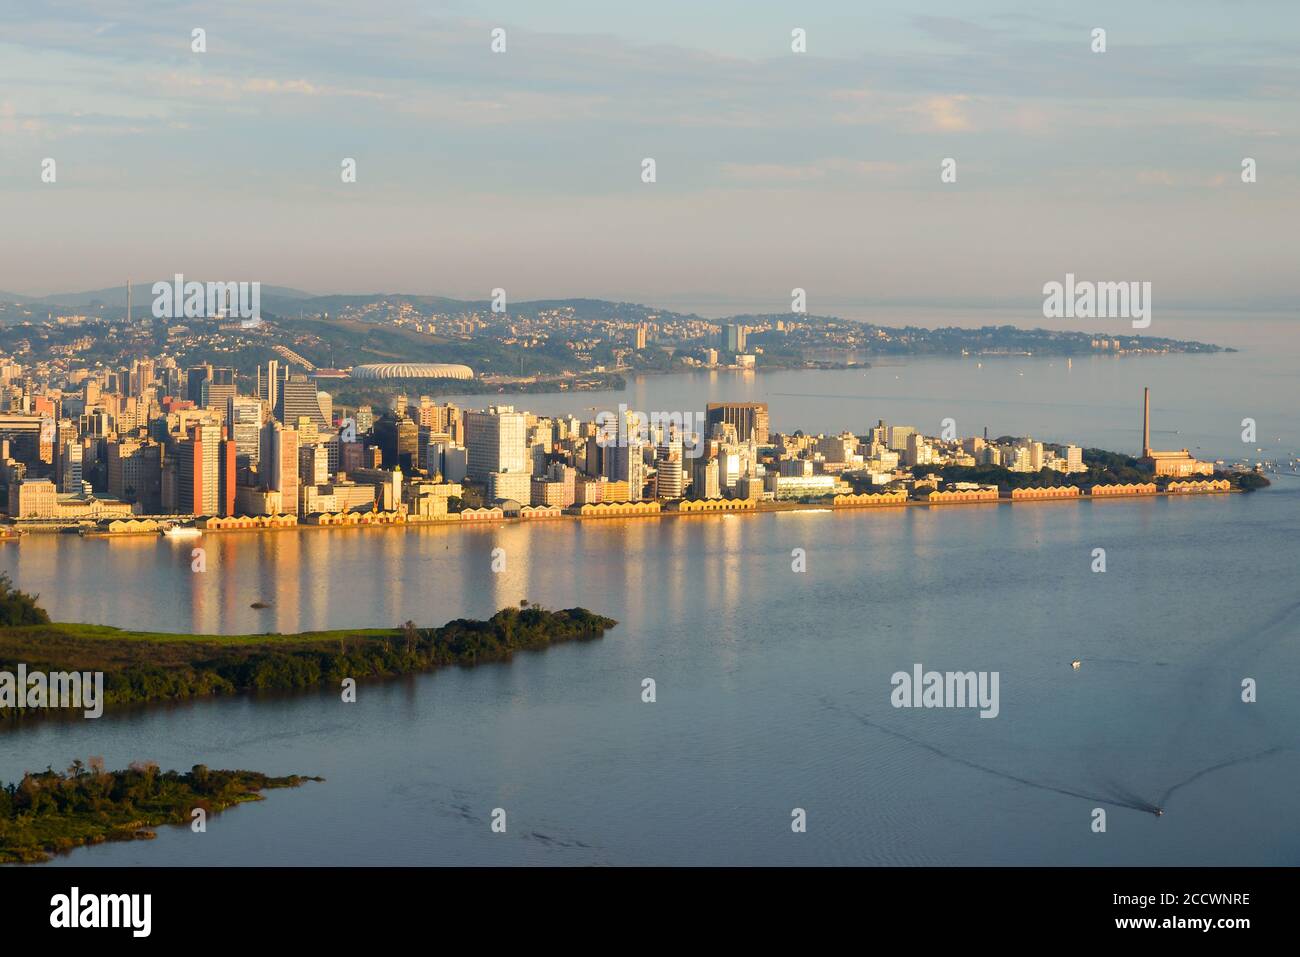 Porto Alegre, Brazil skyline aerial view. City located in Rio Grande do Sul State. Porto Alegre downtown and harbor reflecting in Guaiba Lake / River. Stock Photo